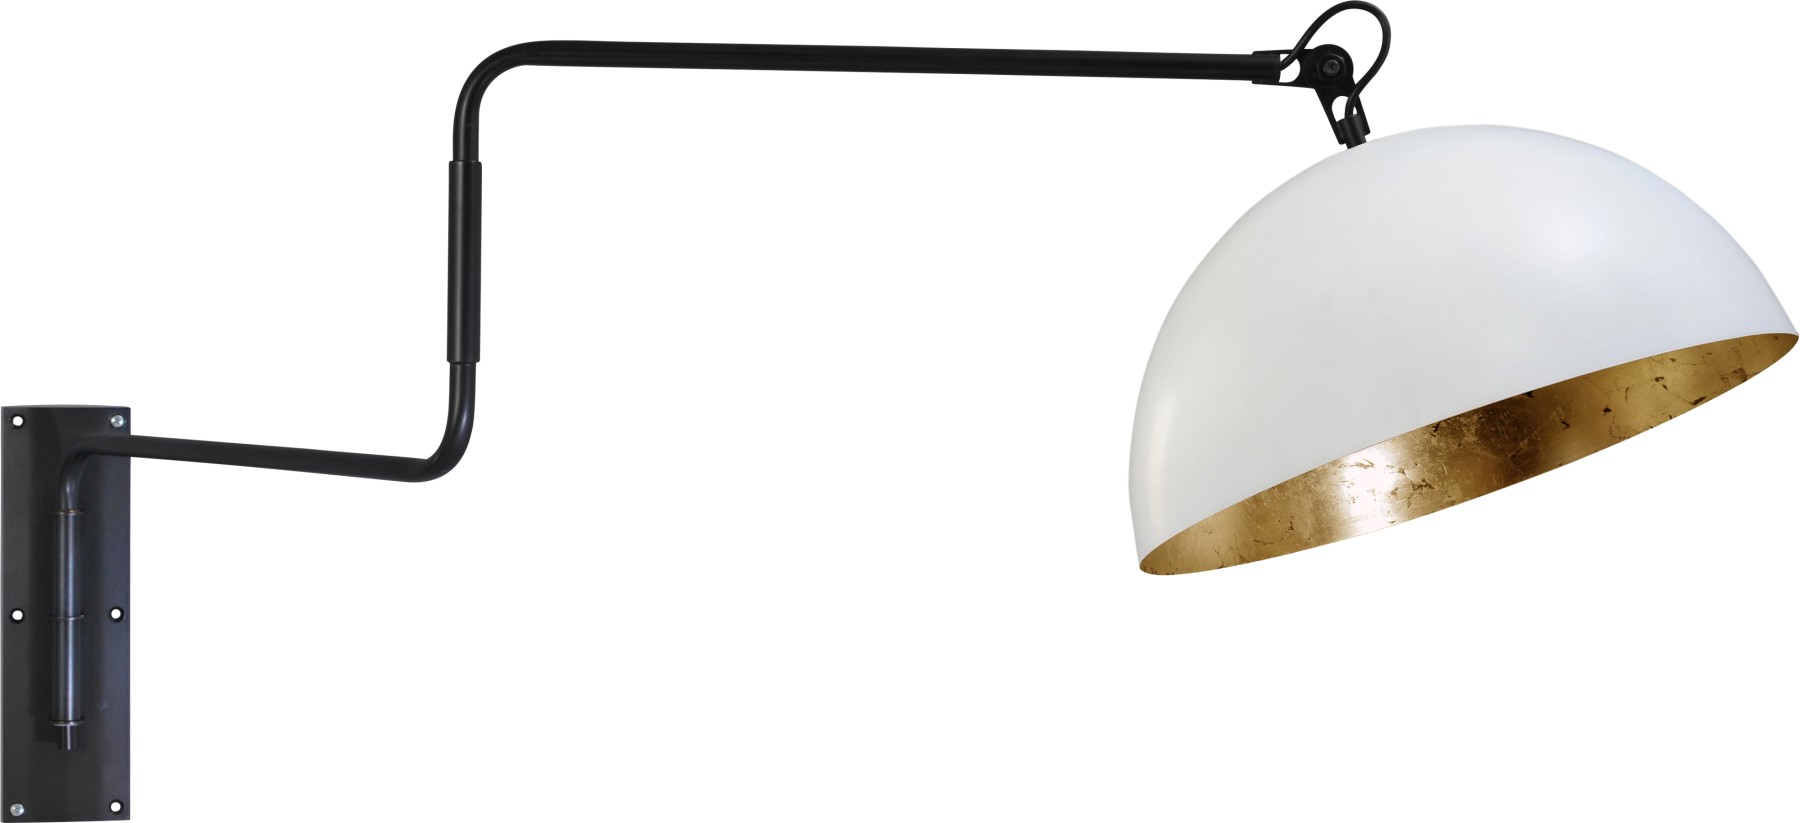 Wandleuchte gold-weiß, Industrielampe/ Retro-style, Ø: 40 cm